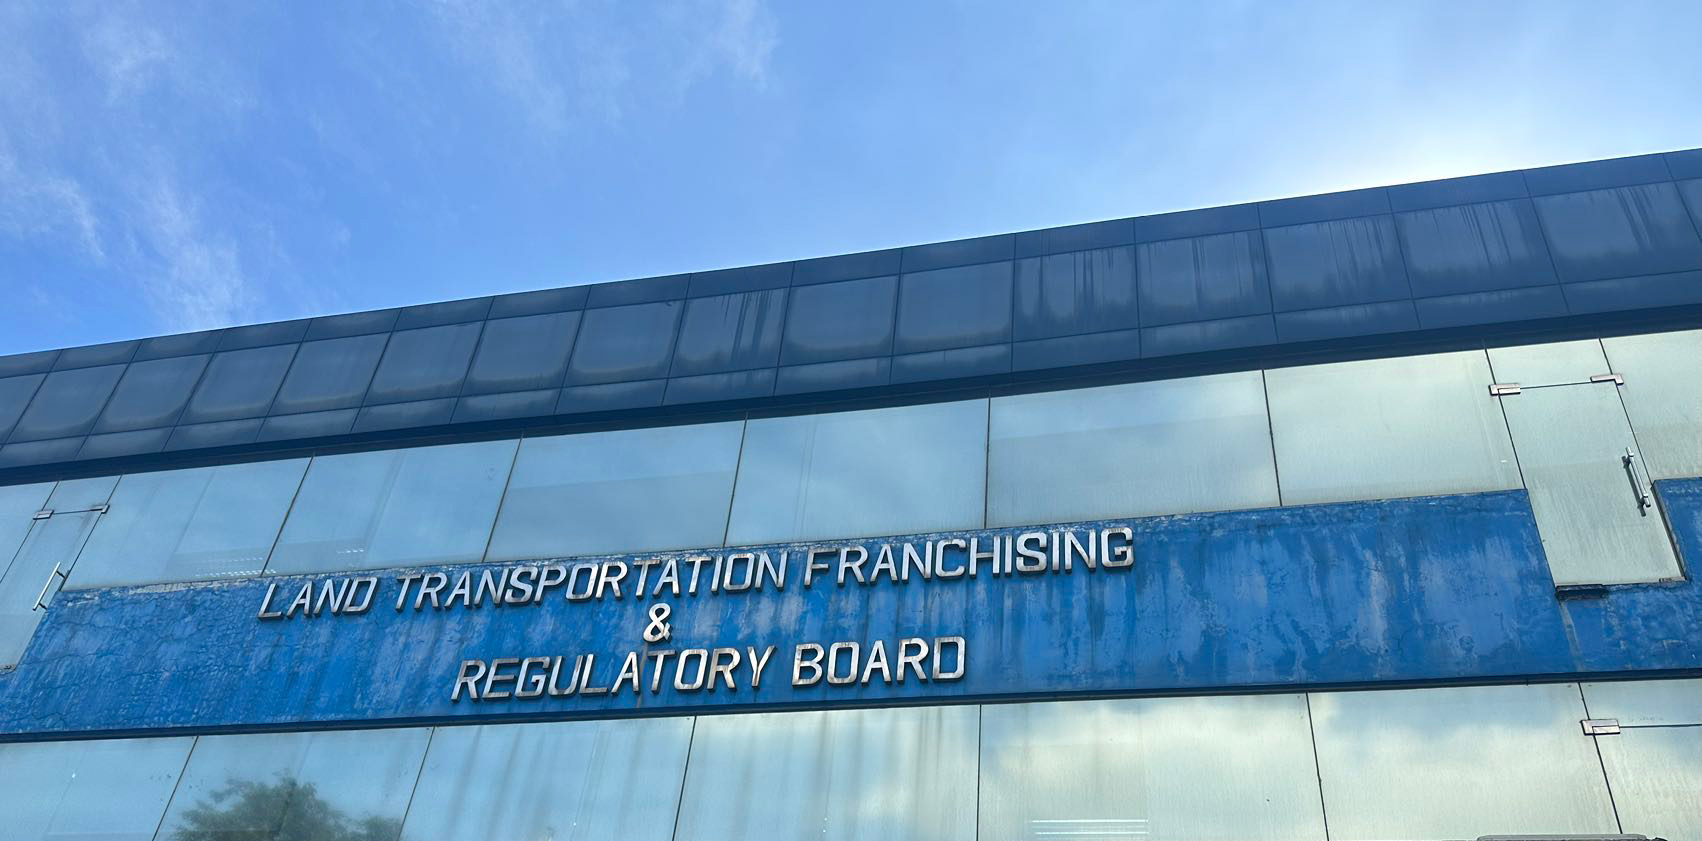 Land-transportation-Franchising&Regulatory-Board